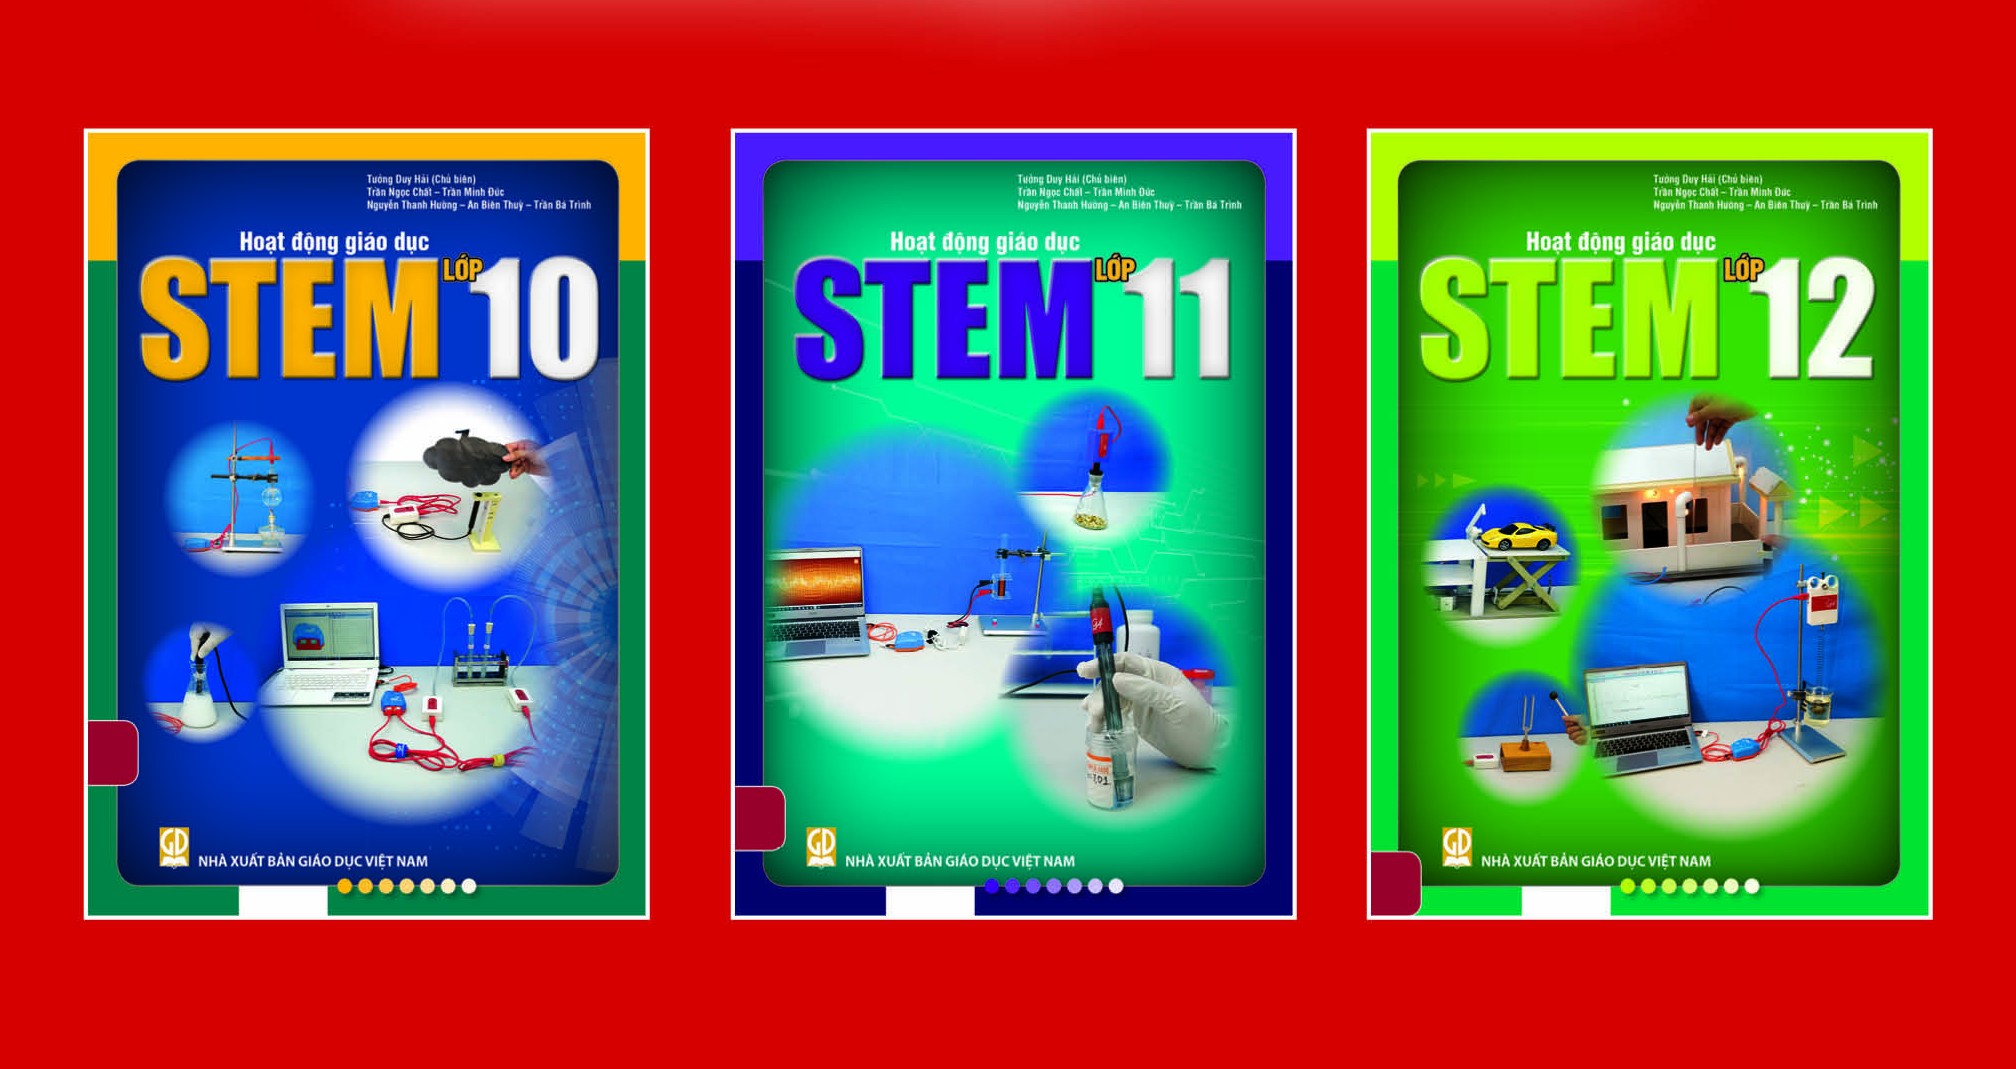 Giới thiệu bộ sách: Hoạt động giáo dục STEM